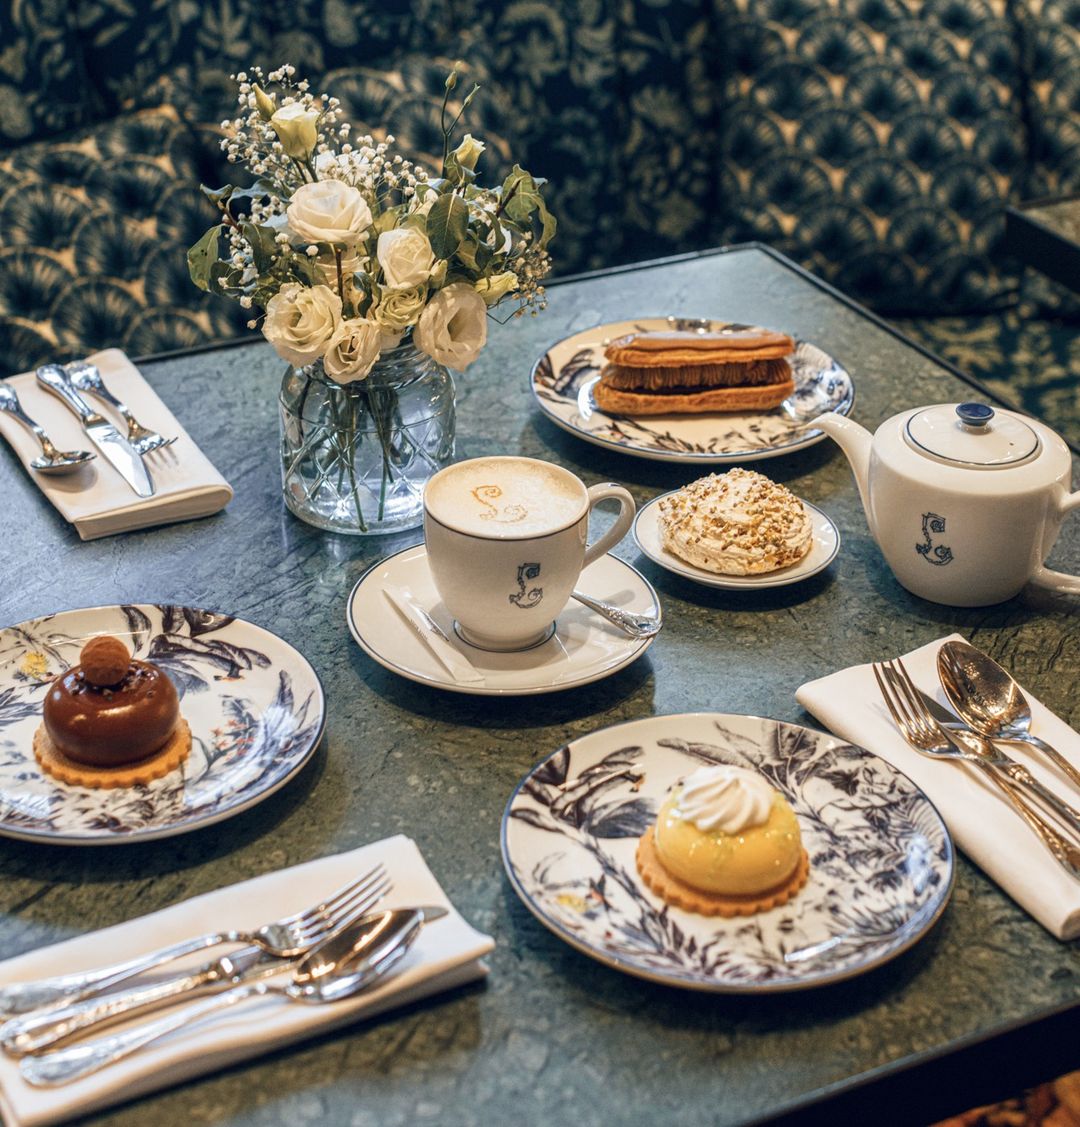 Vintage floral blue and white plates for tea time pastries at Café Lapérouse